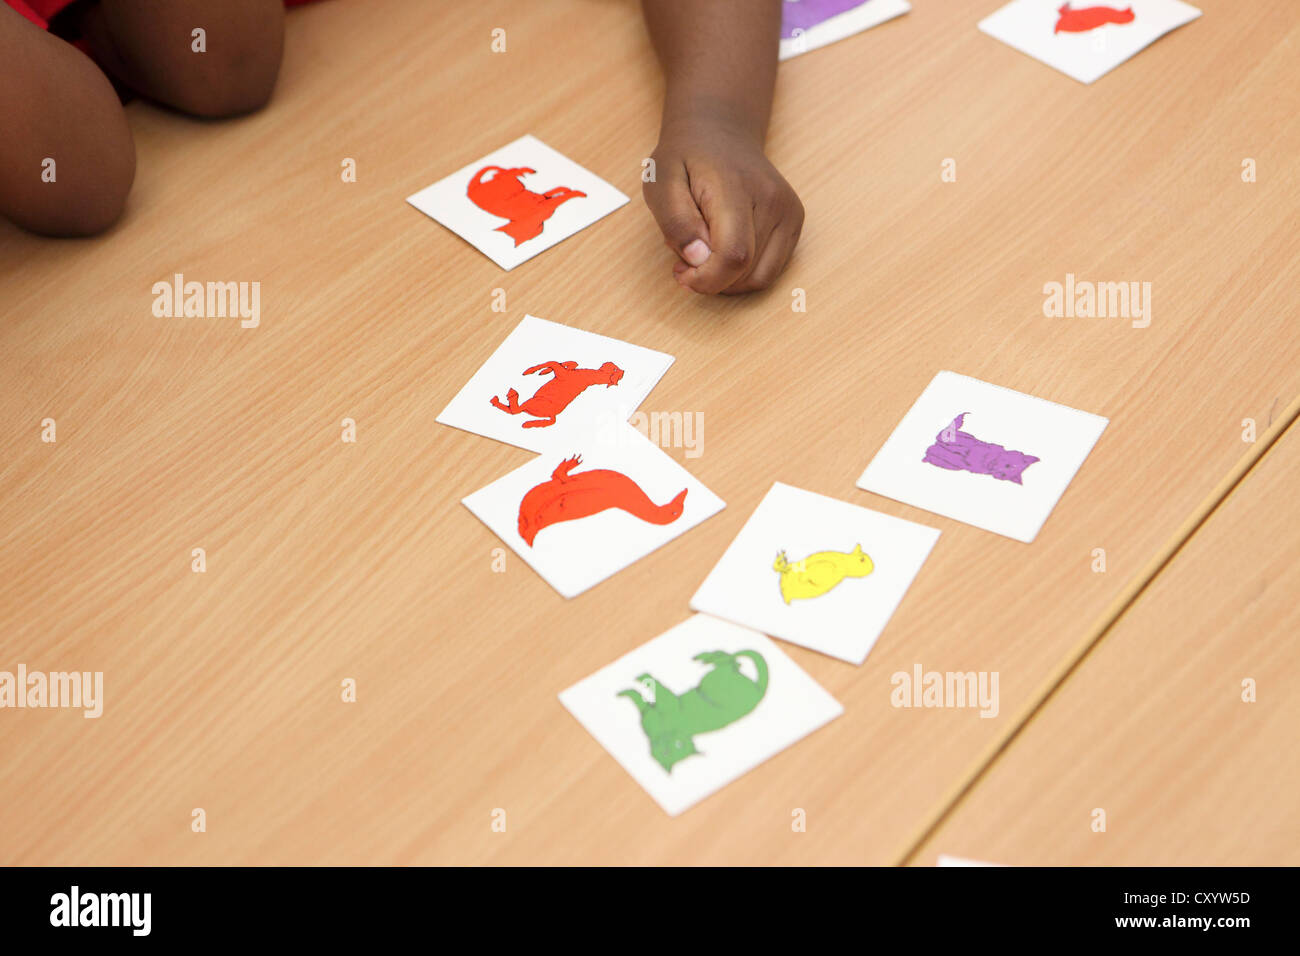 Close-up de la main et du bras de l'enfant, avec des cartes, effectuer des sélections, Londres l'enseignement primaire. Banque D'Images